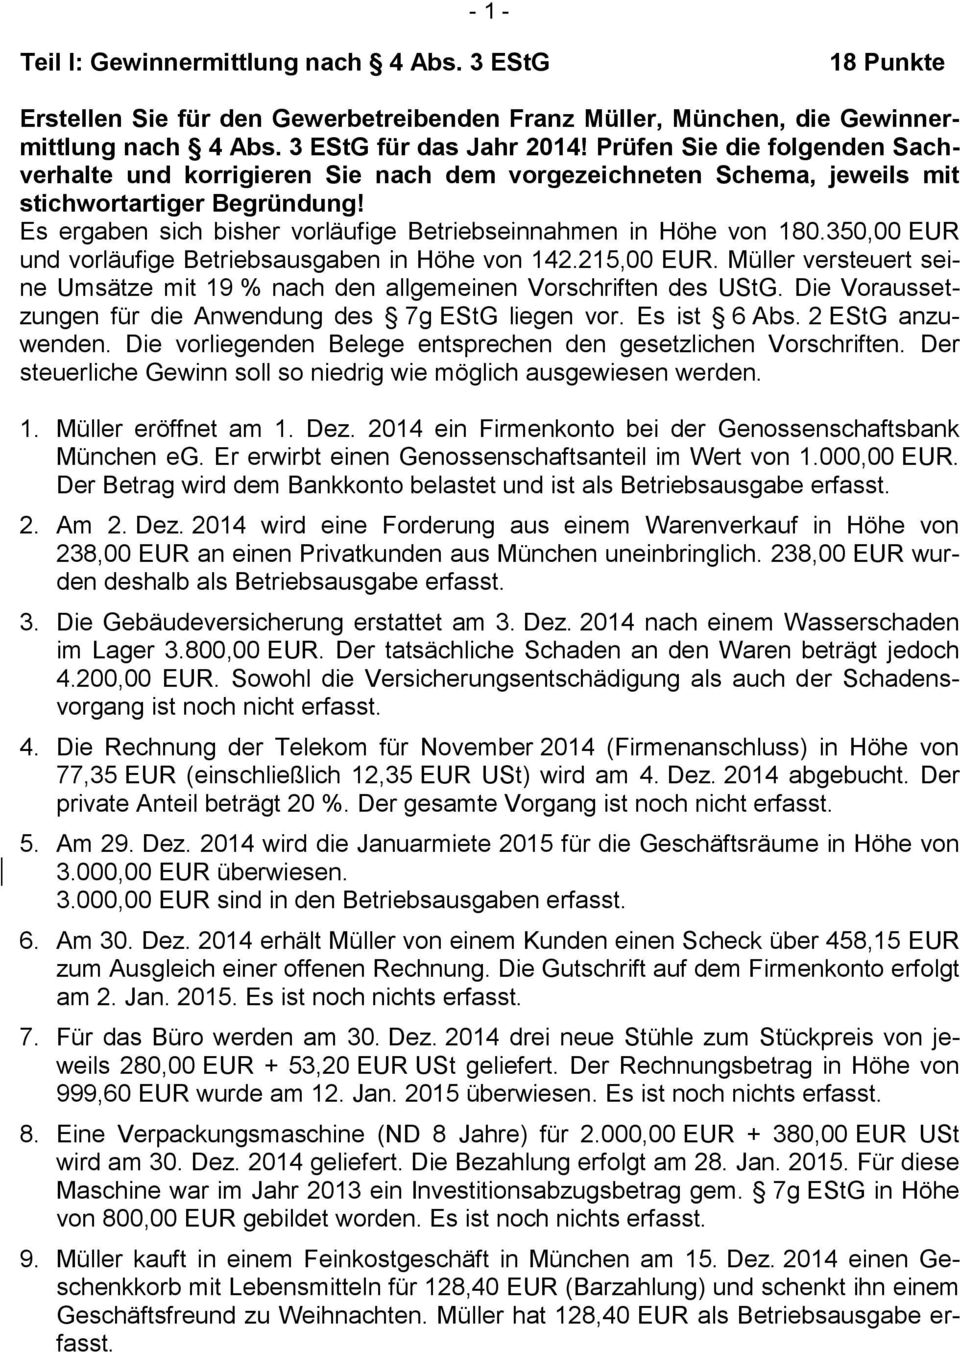 350,00 EUR und vorläufige Betriebsausgaben in Höhe von 142.215,00 EUR. Müller versteuert seine Umsätze mit 19 % nach den allgemeinen Vorschriften des UStG.